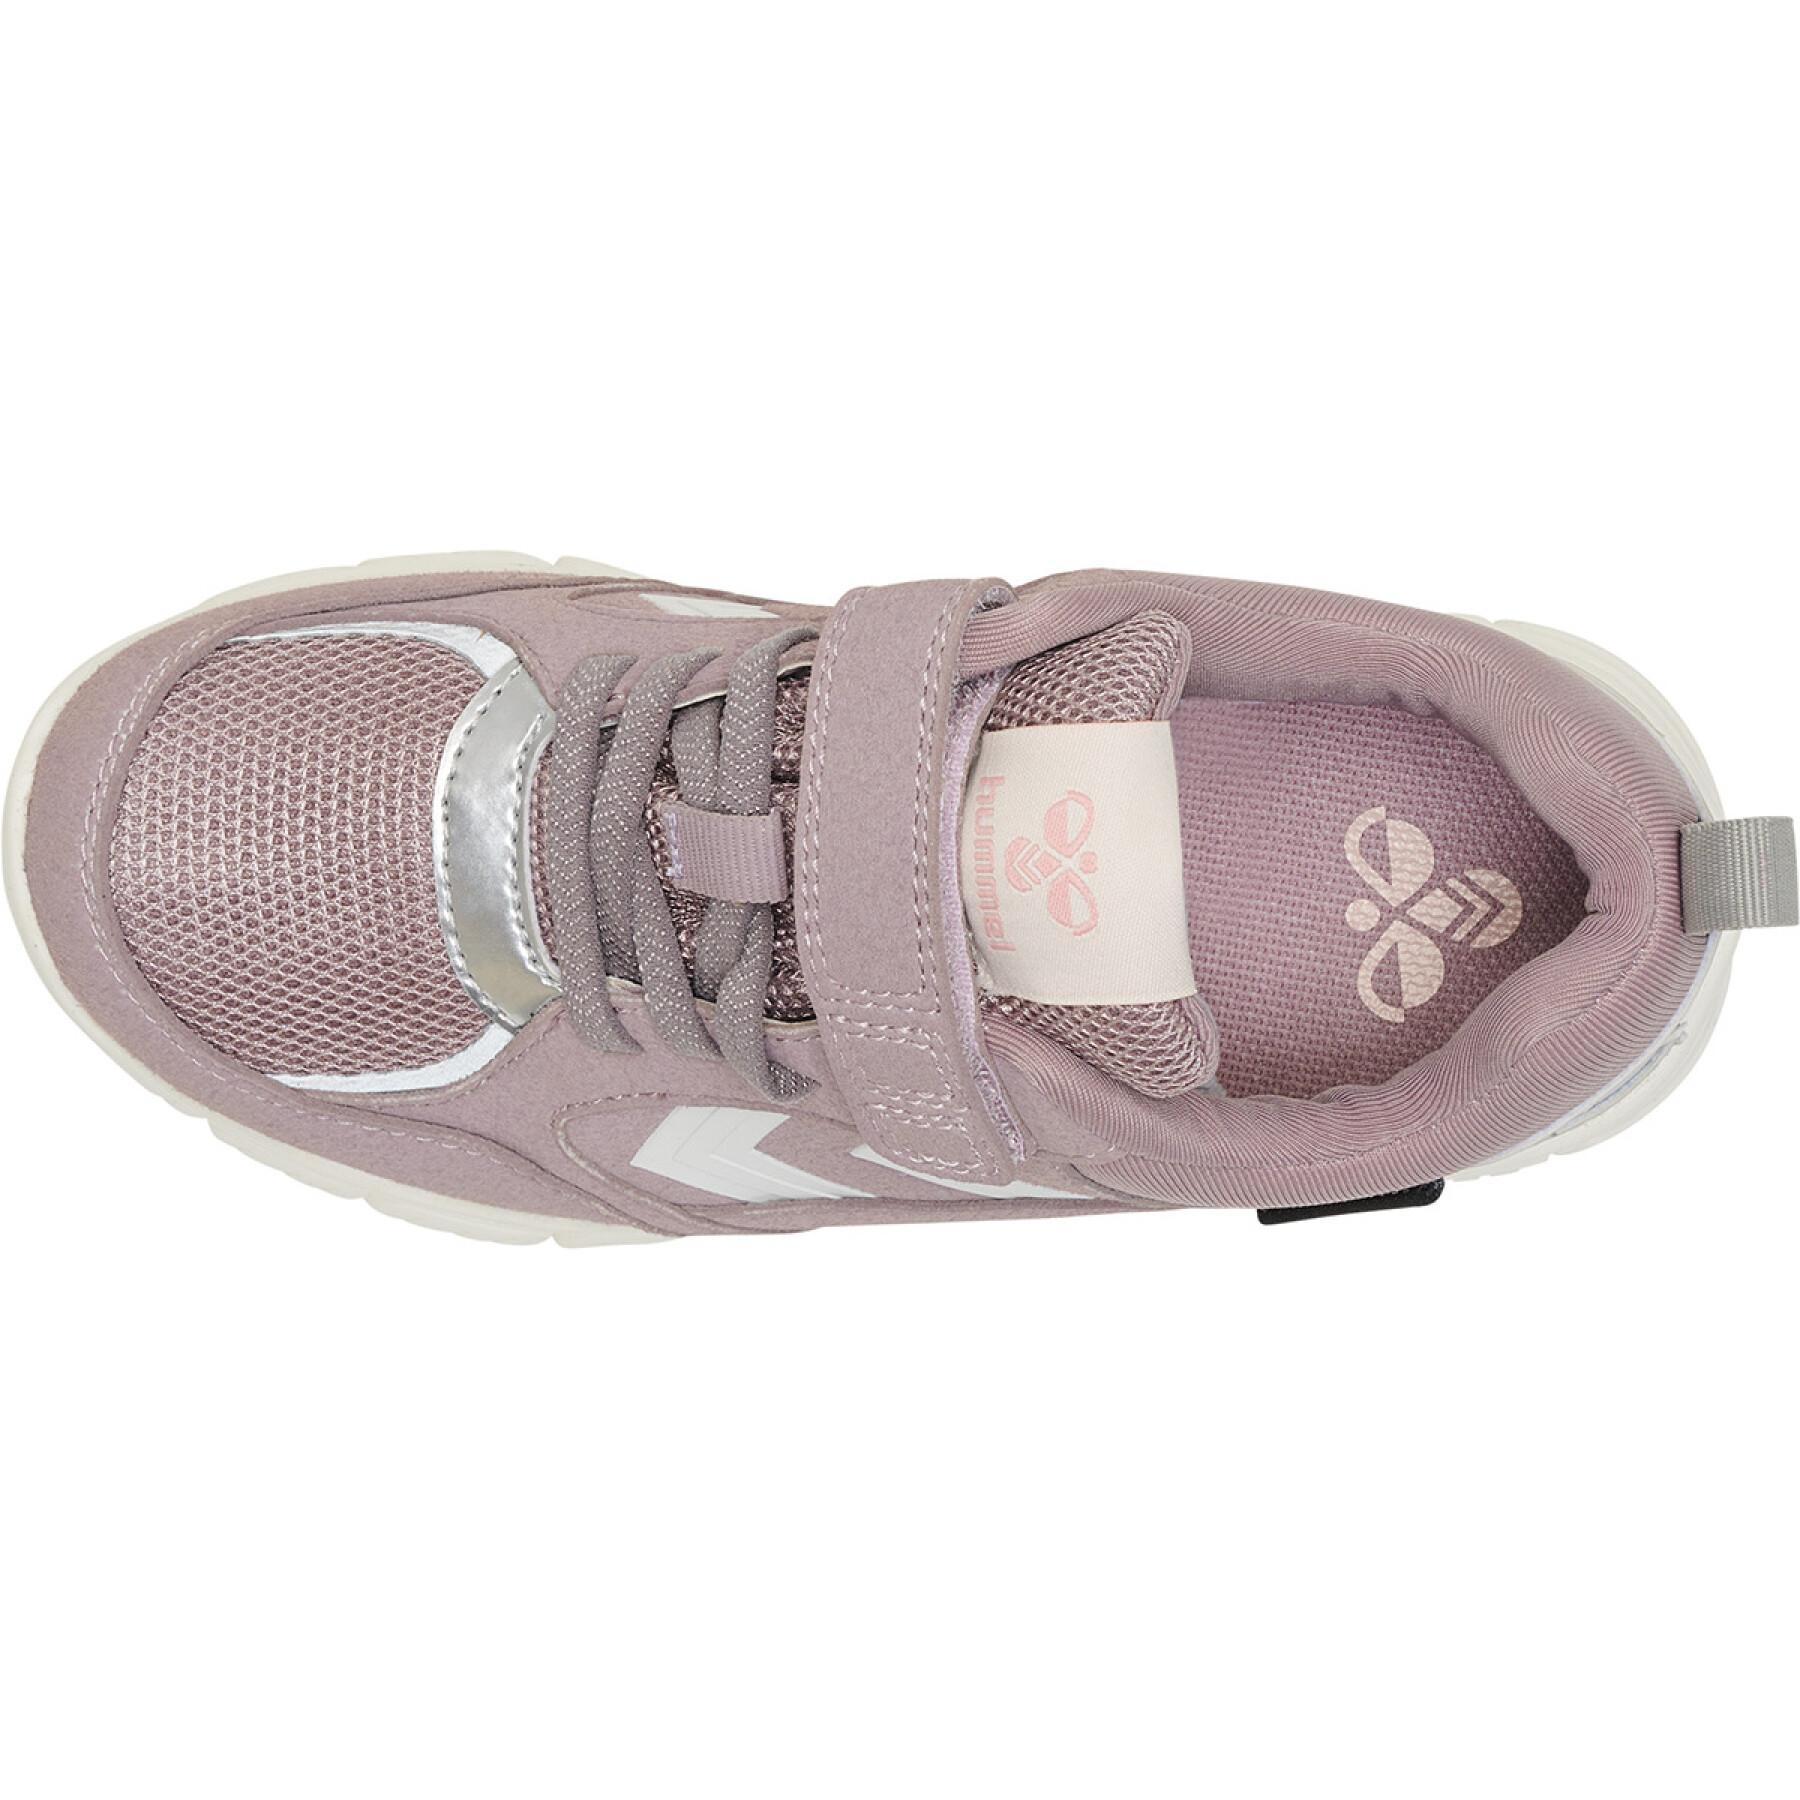 Children's sneakers Hummel X-LIGHT 2.0 TEX